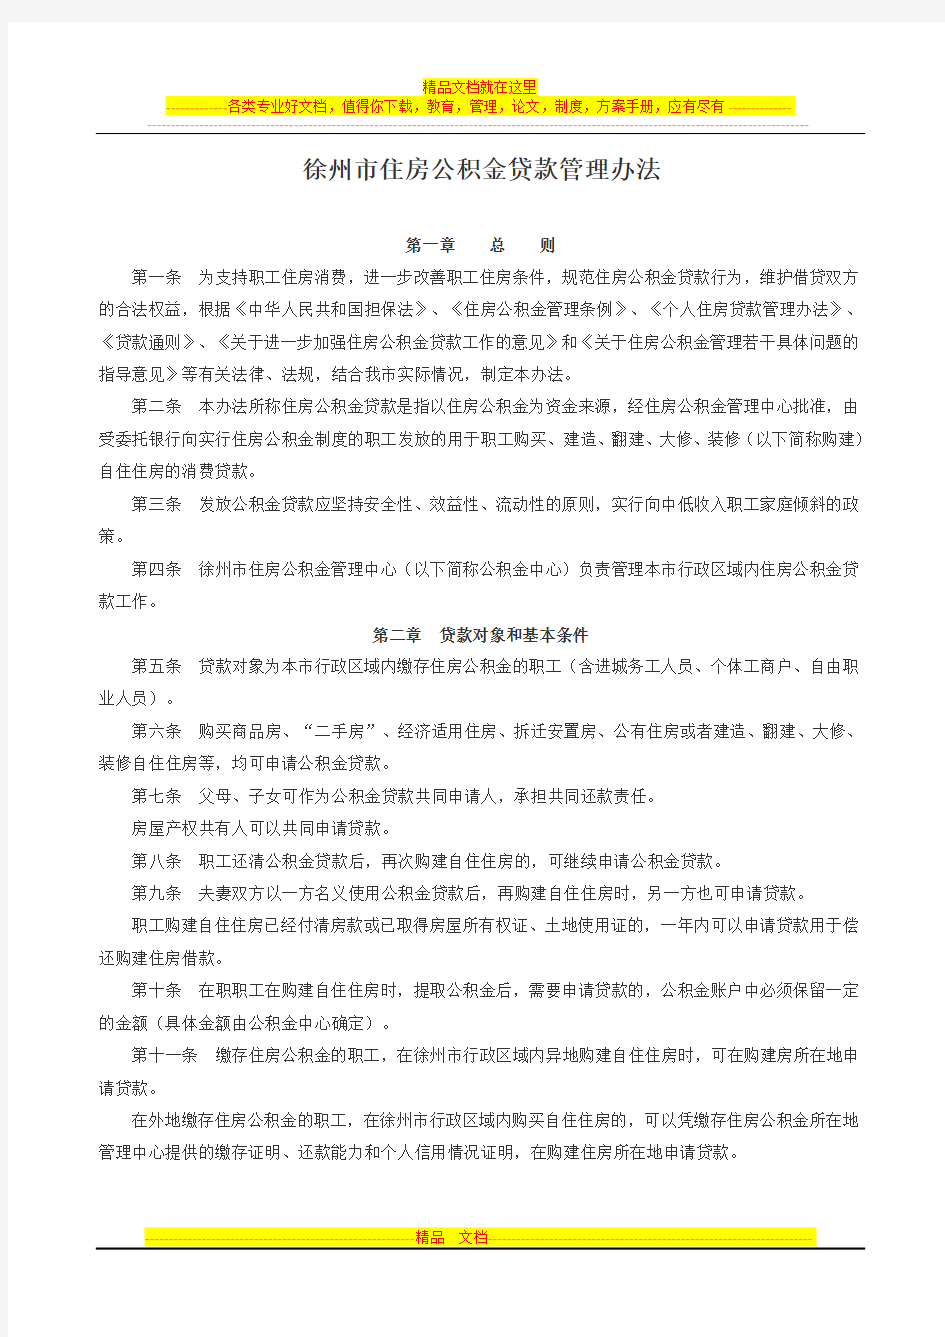 徐州市住房公积金贷款管理办法